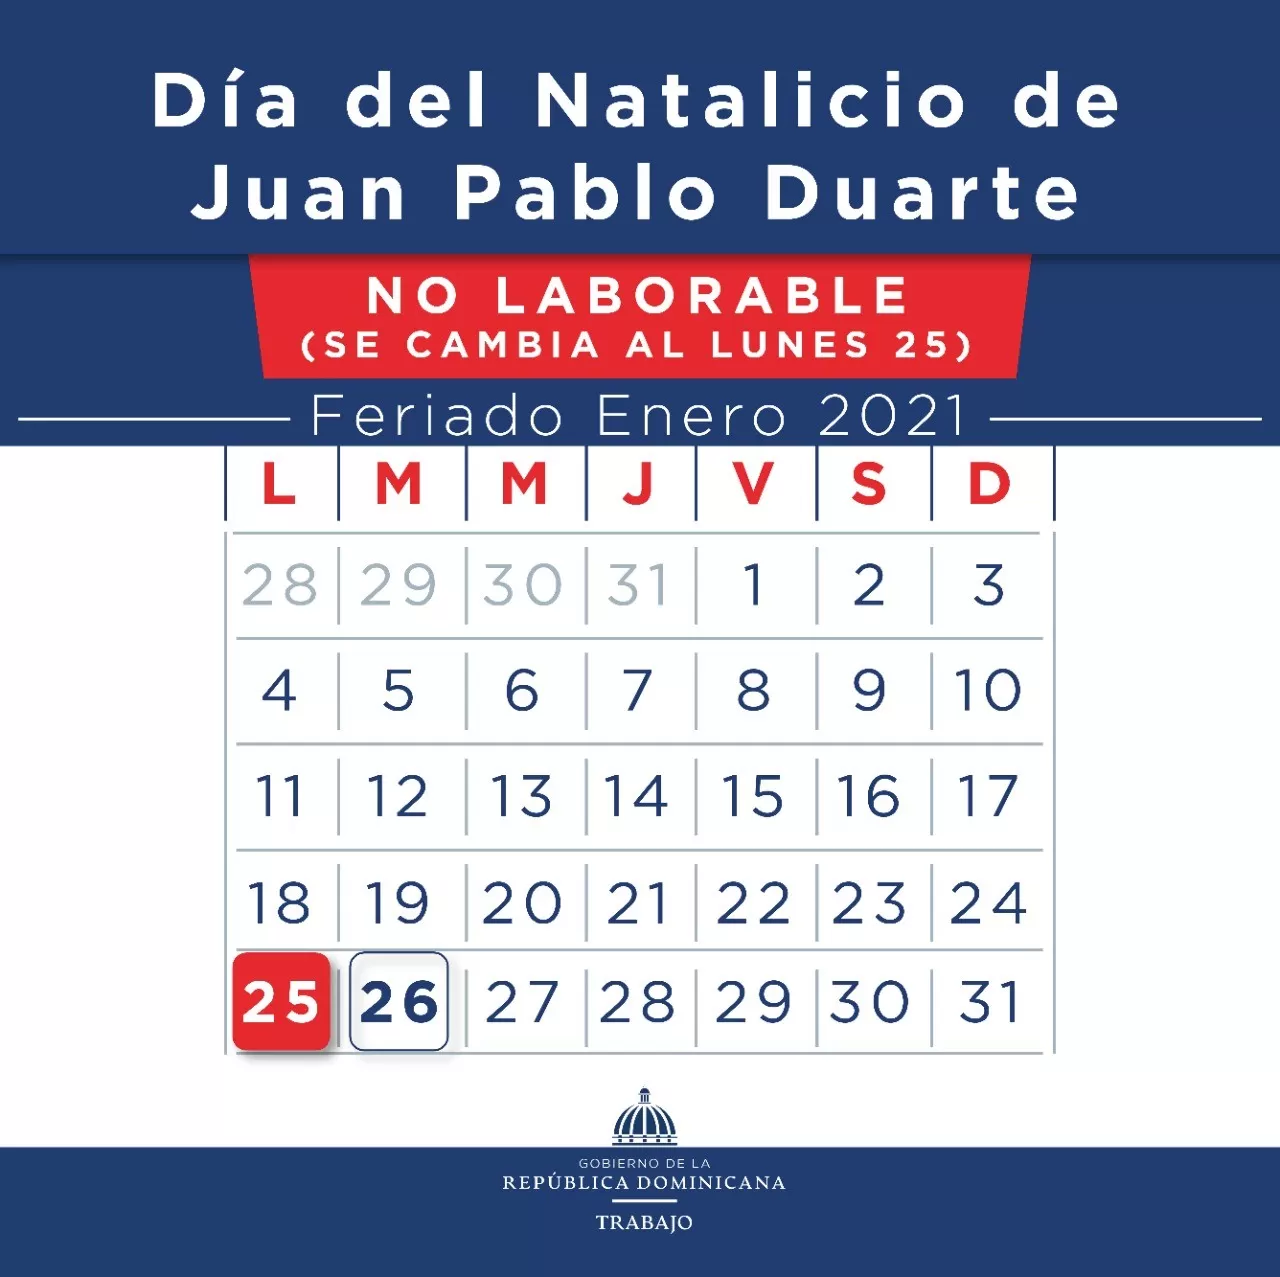 Ministerio de Trabajo informa feriado natalicio Juan Pablo Duarte será el lunes 25